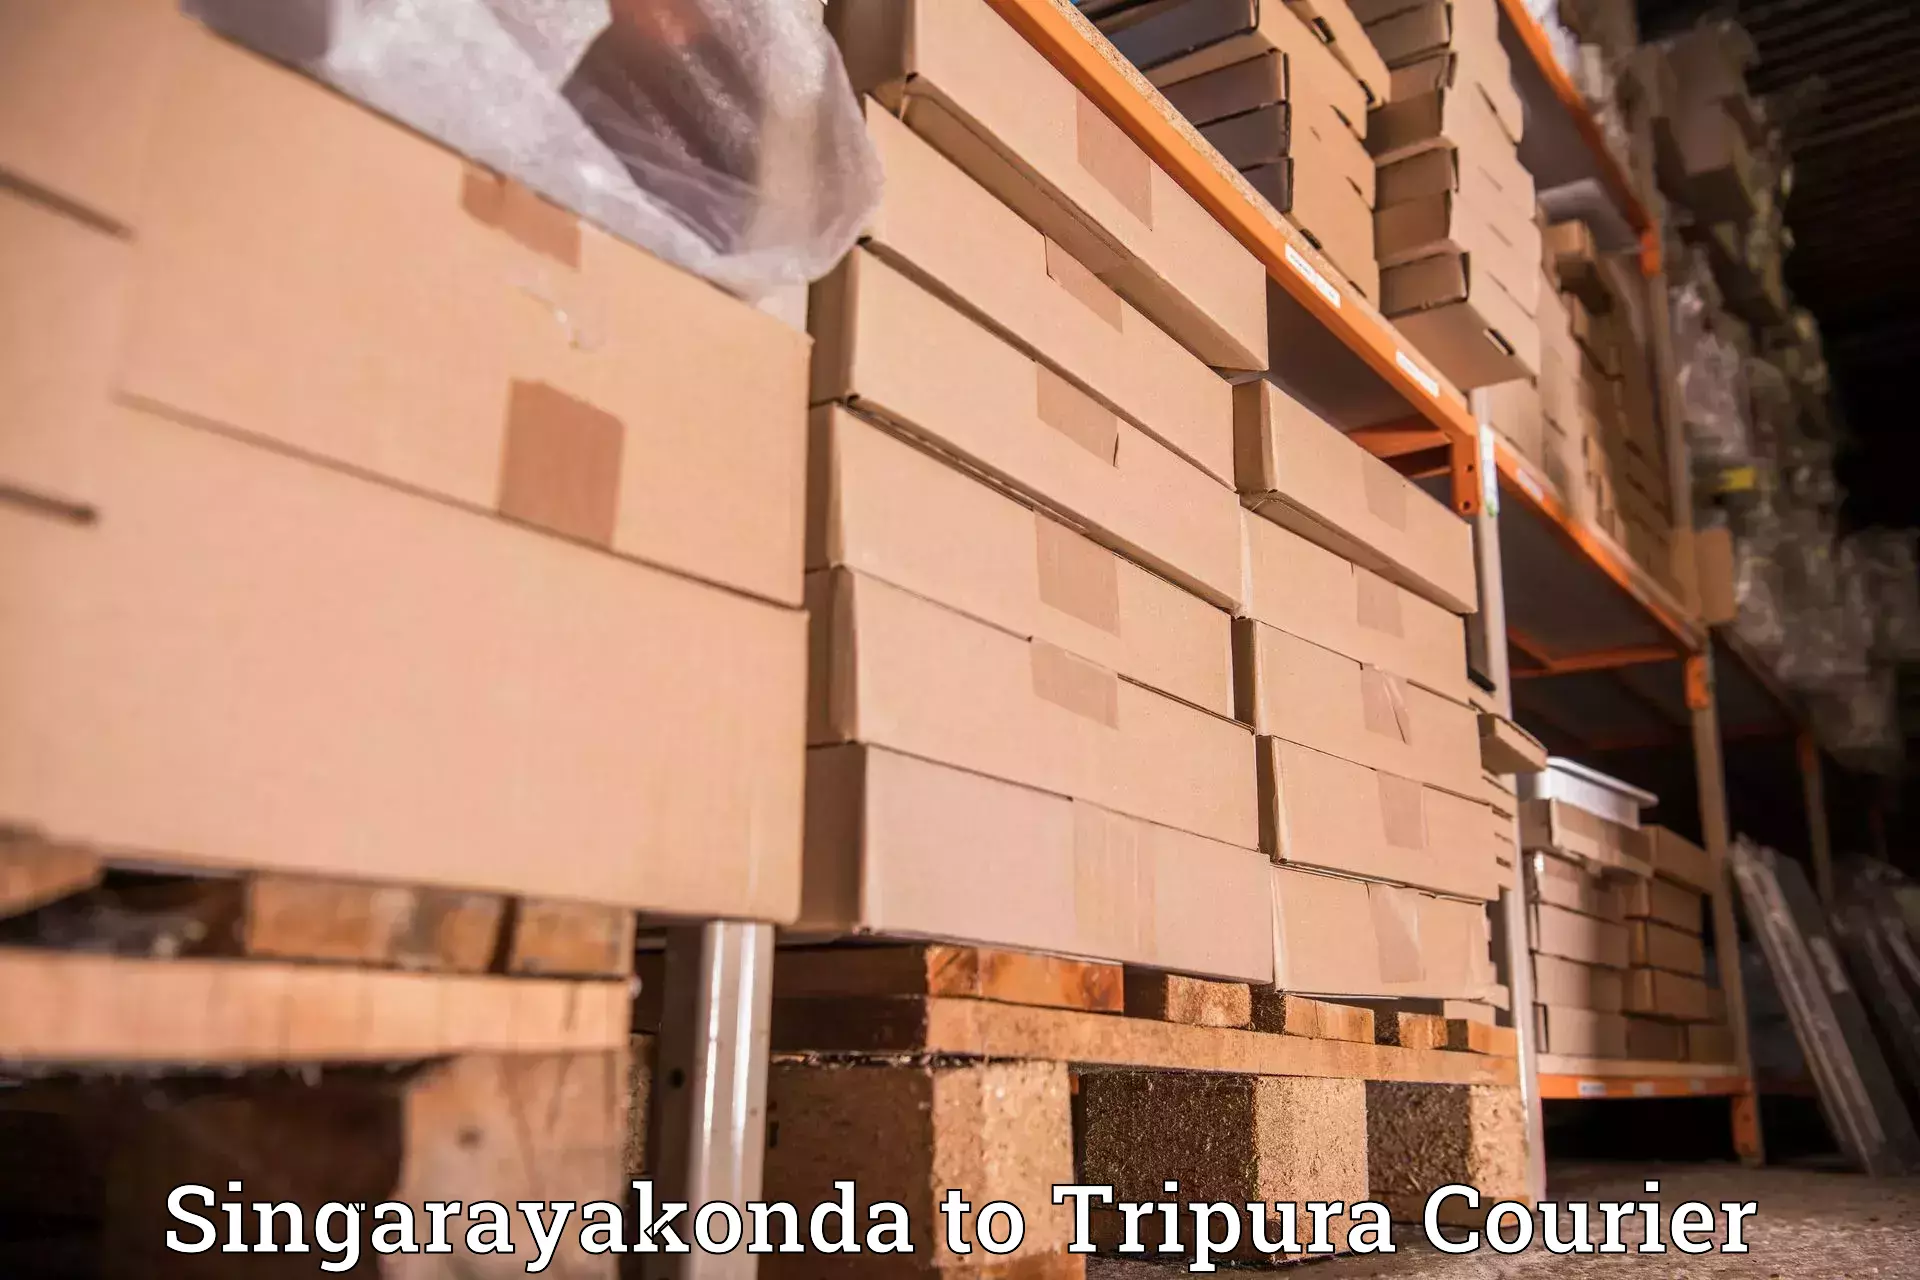 Premium courier solutions Singarayakonda to Manu Bazar